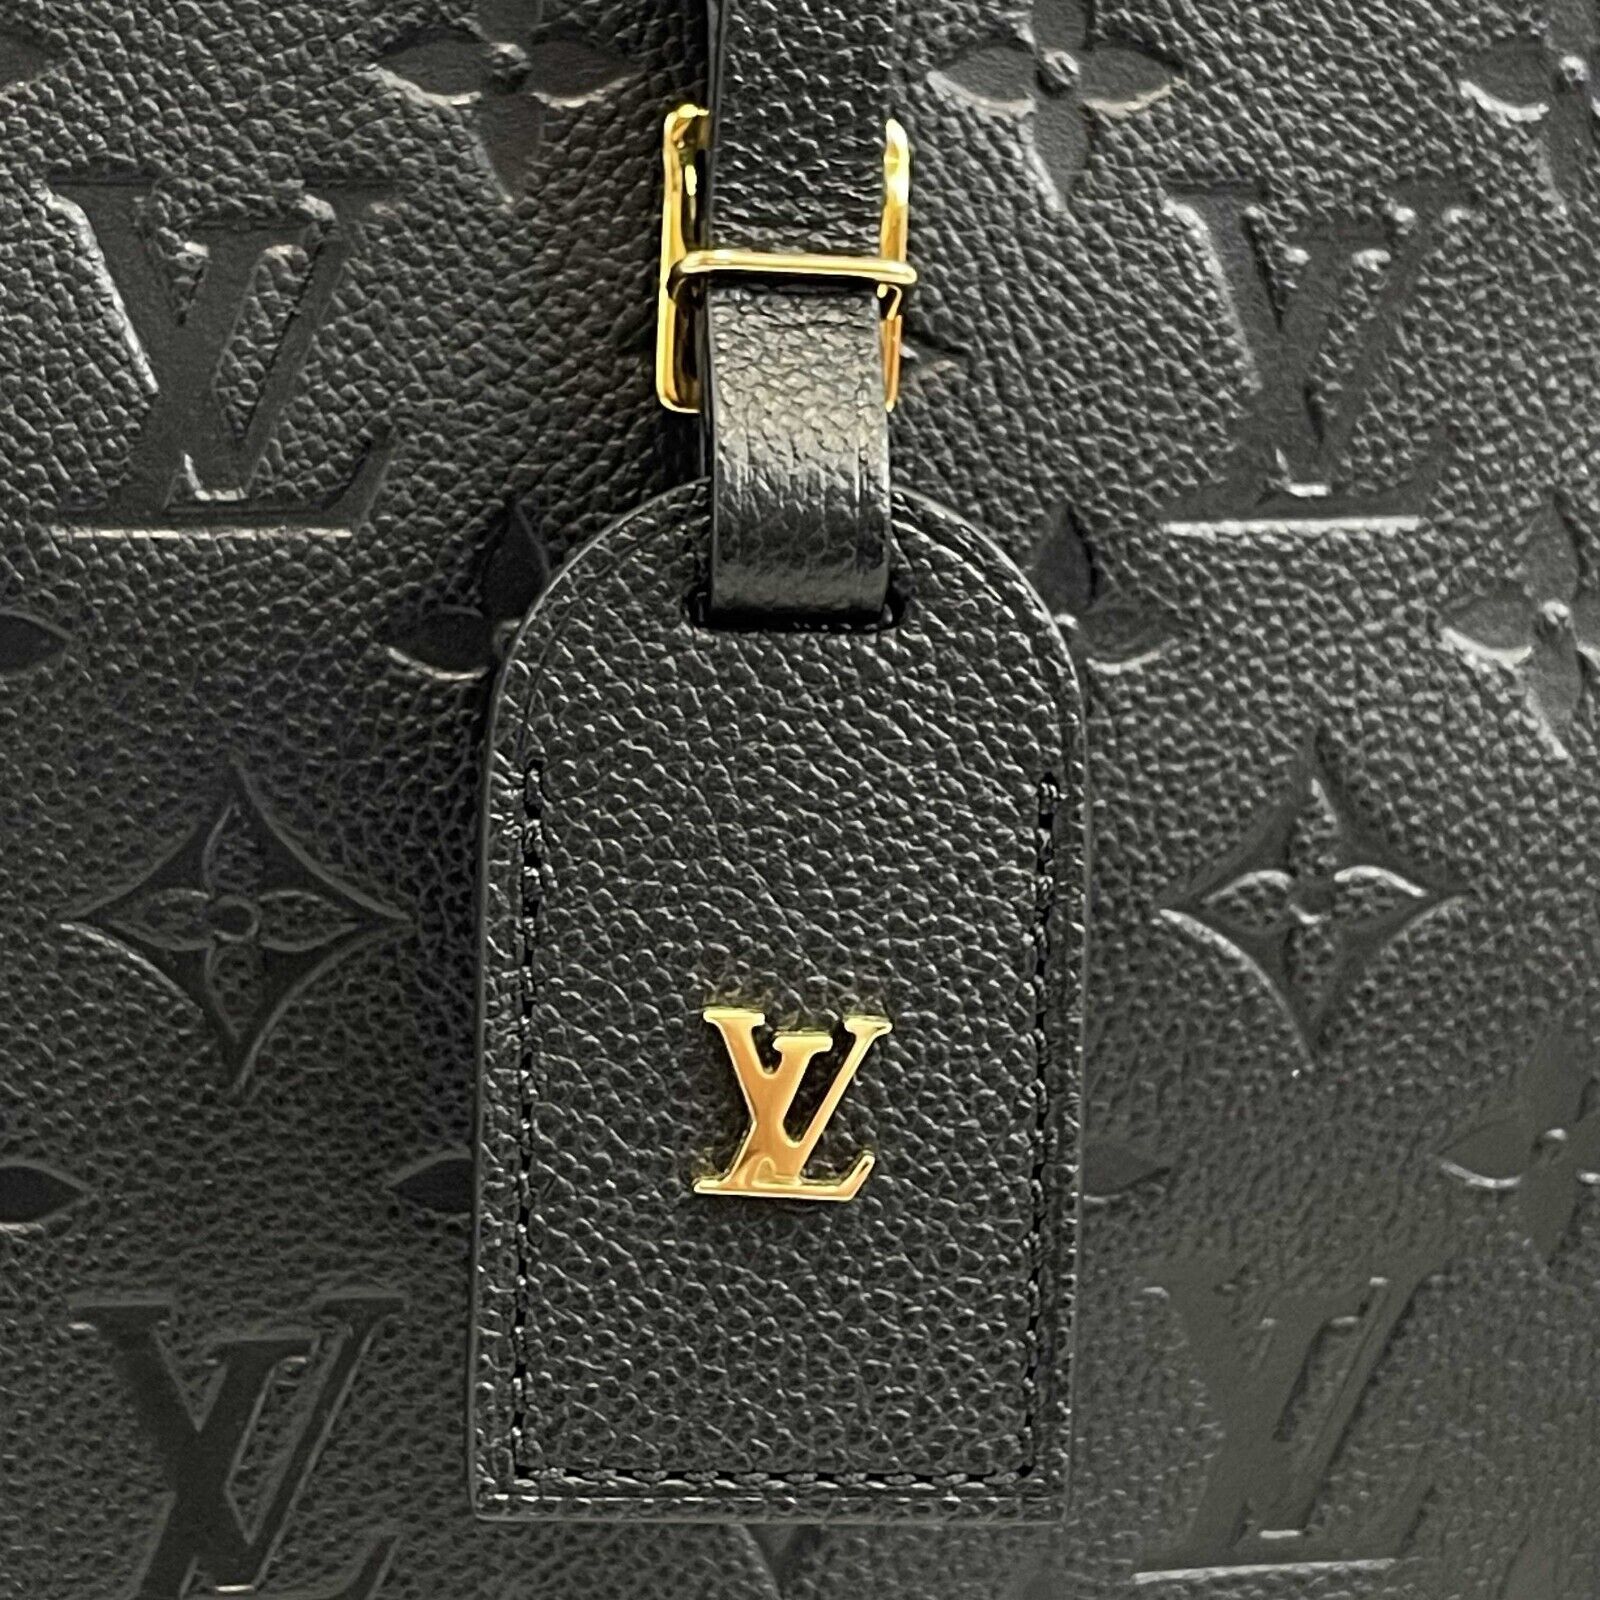 Louis Vuitton, FLAP DOUBLE PHONE POUCH, LVxNIGO 2, Limited Edition  2021